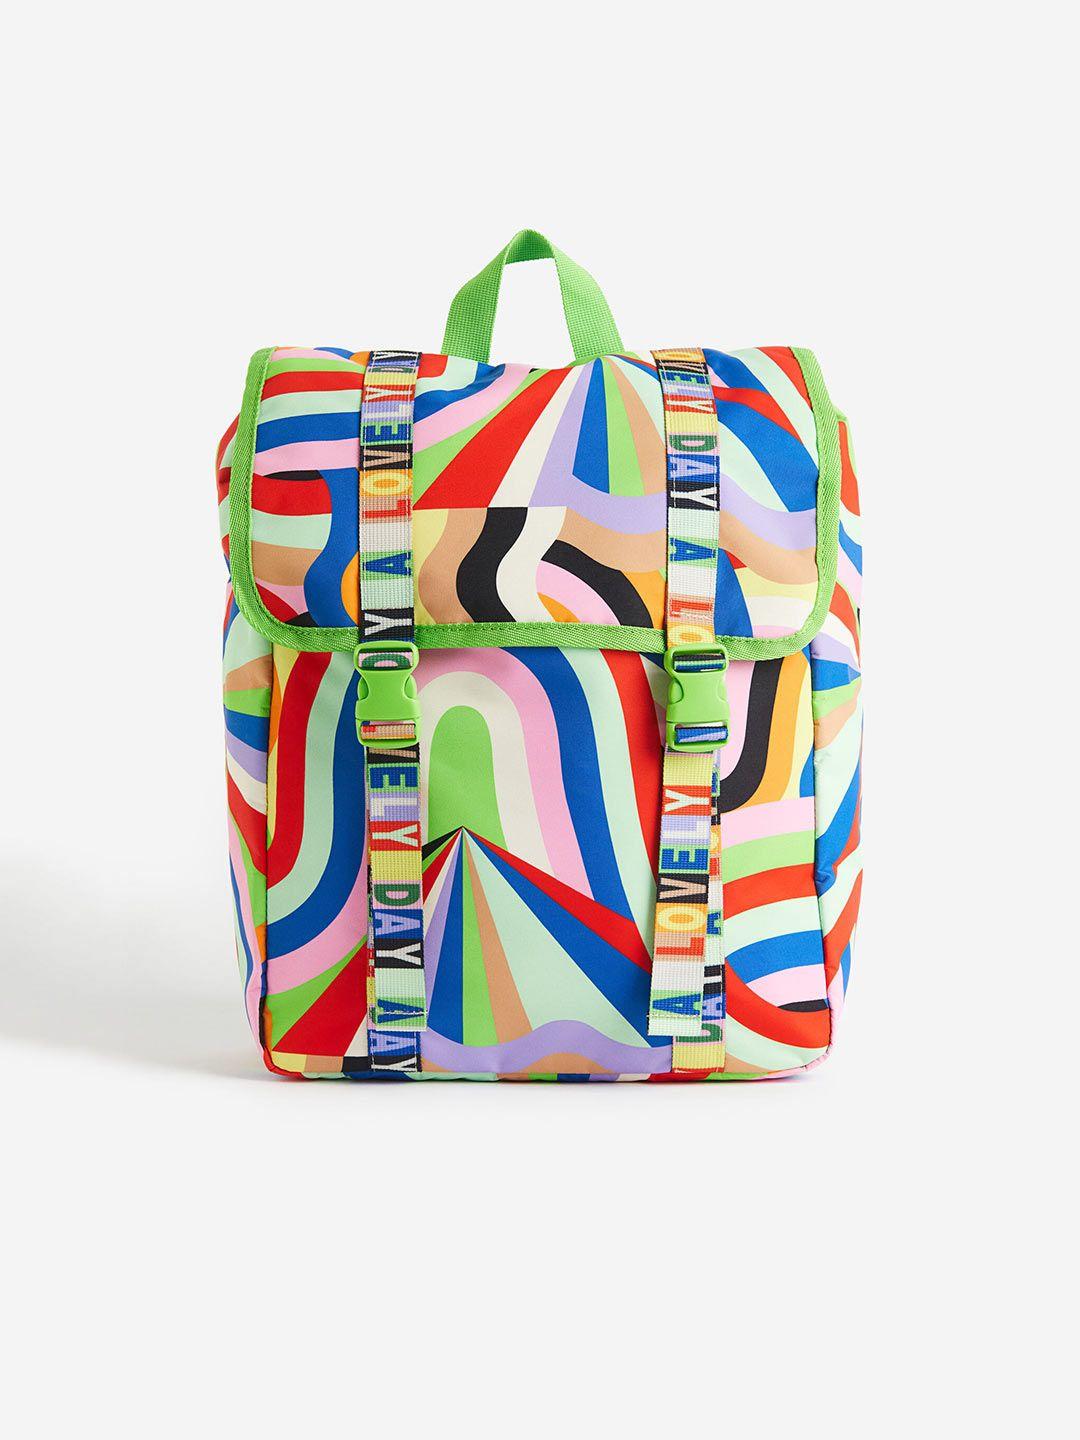 h&m boys patterned backpack